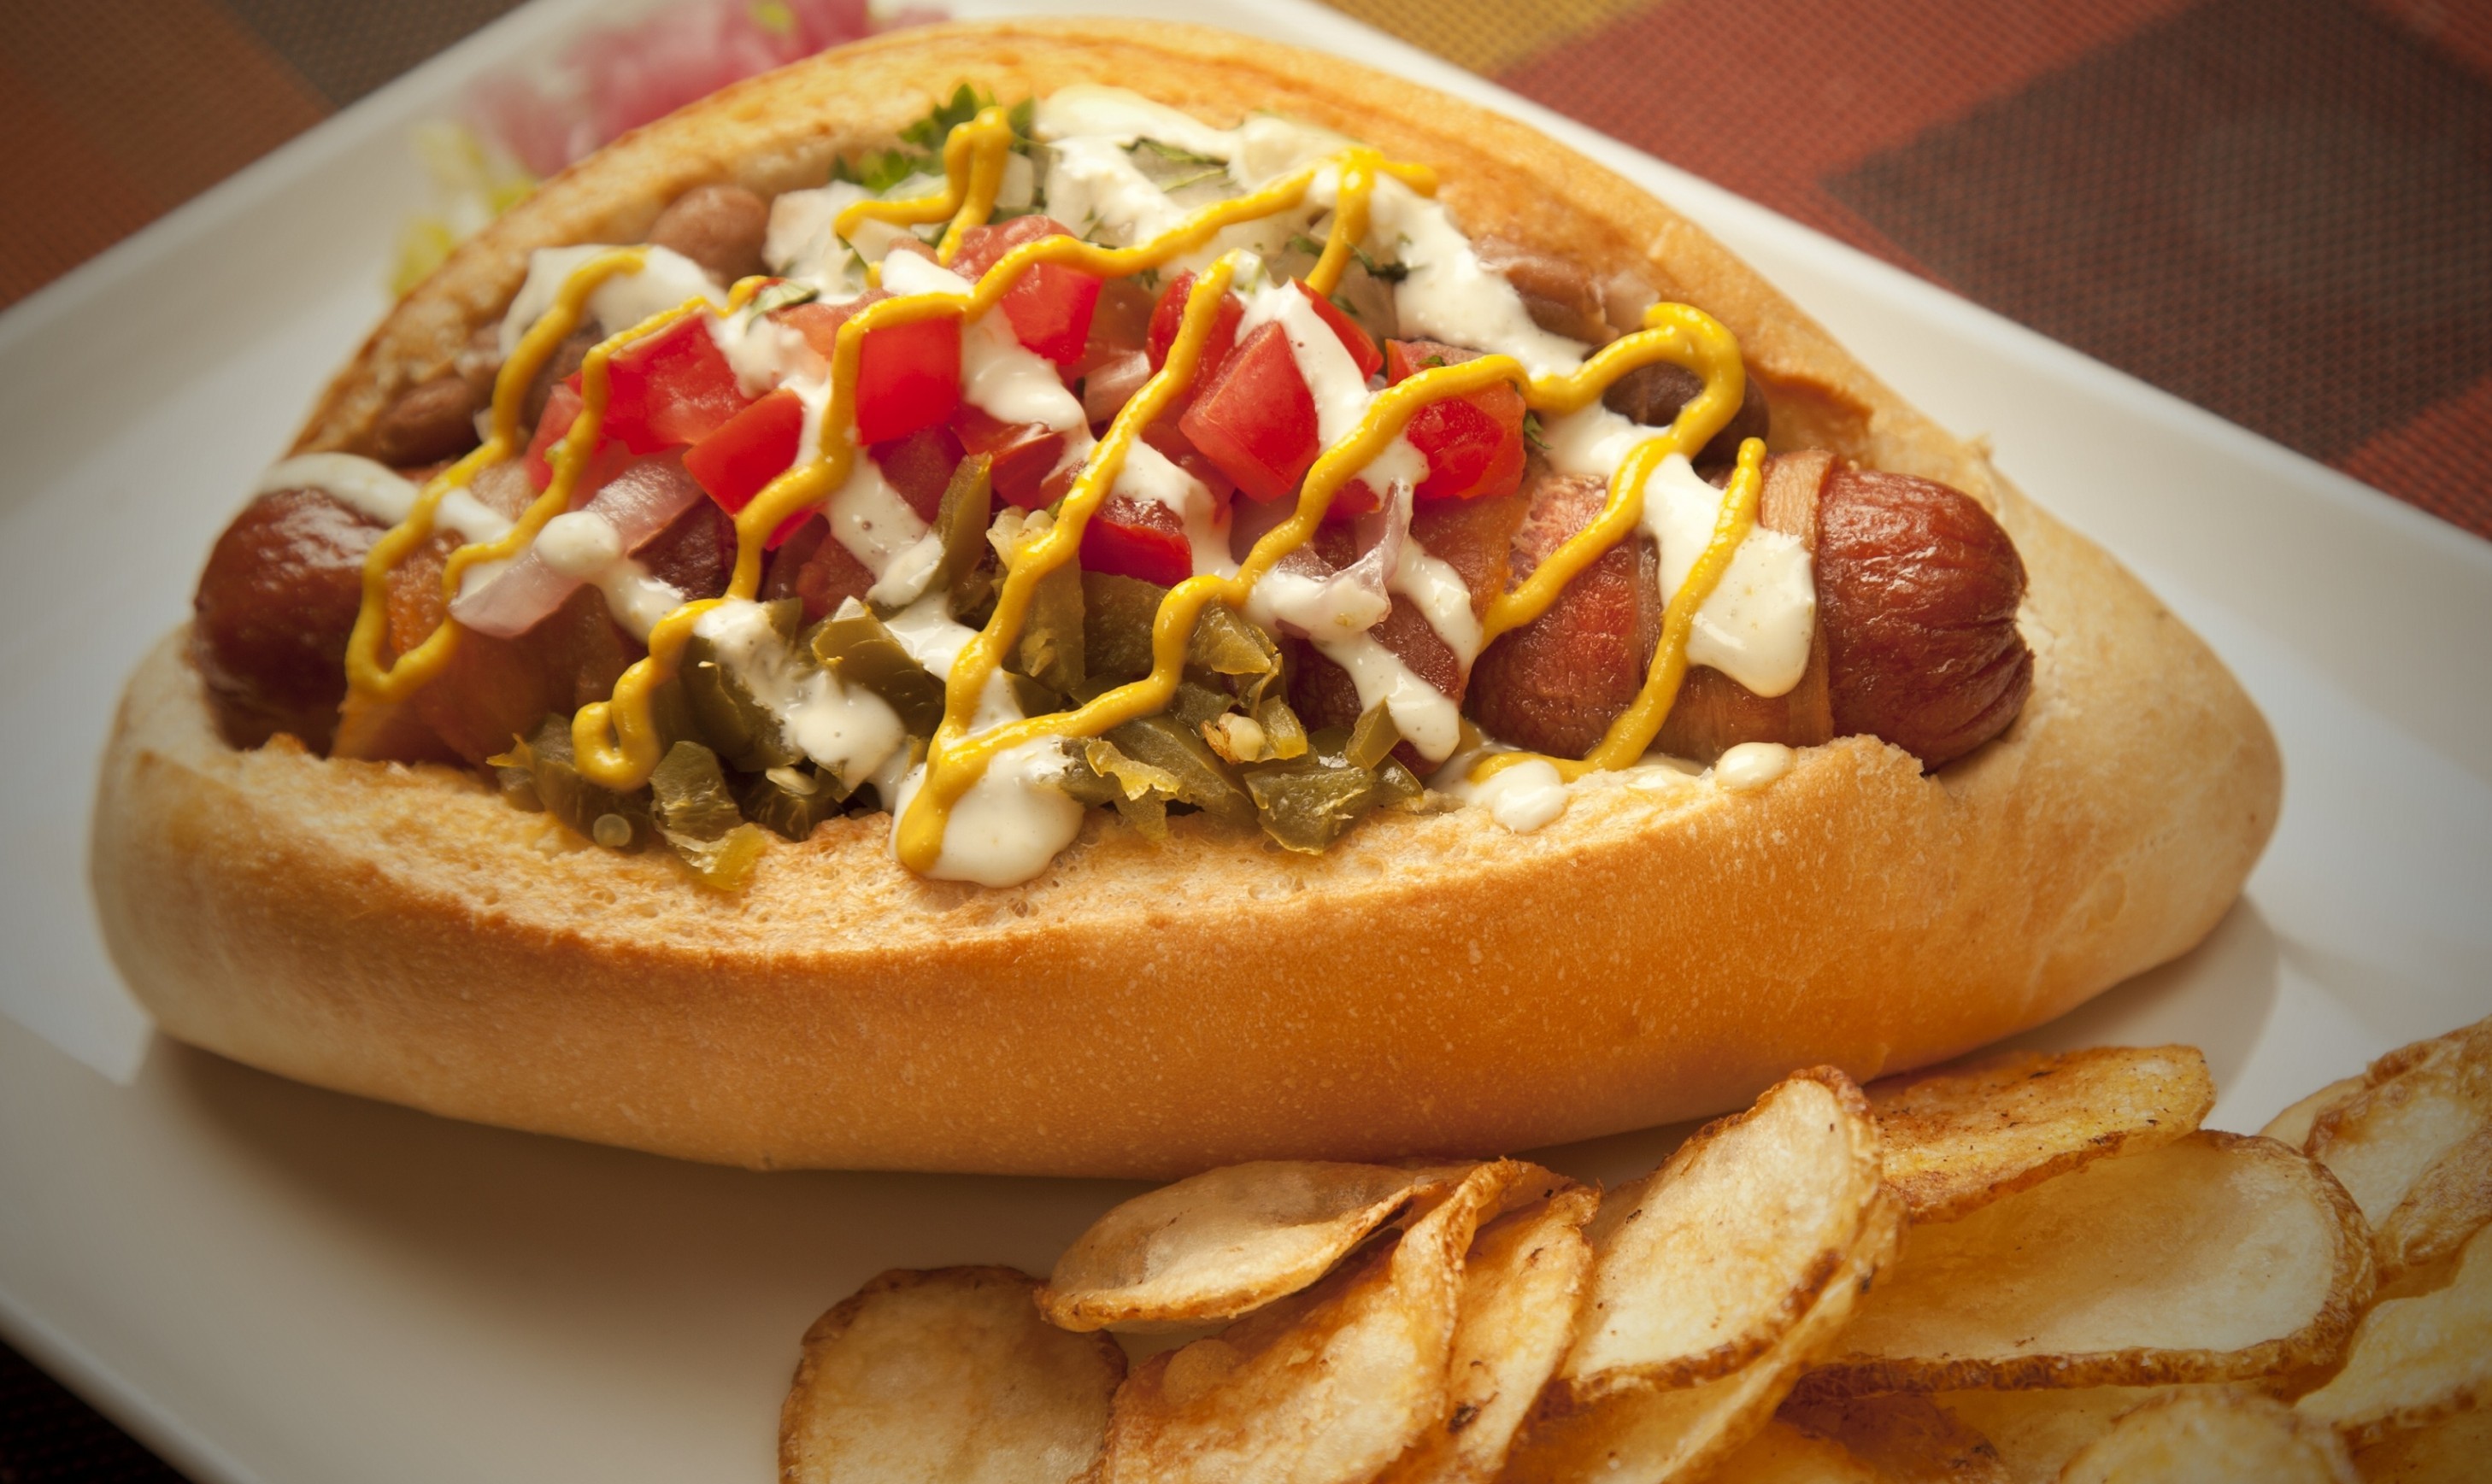 Hot Dog, Vegetables, Fast Food - Hot Dog - HD Wallpaper 